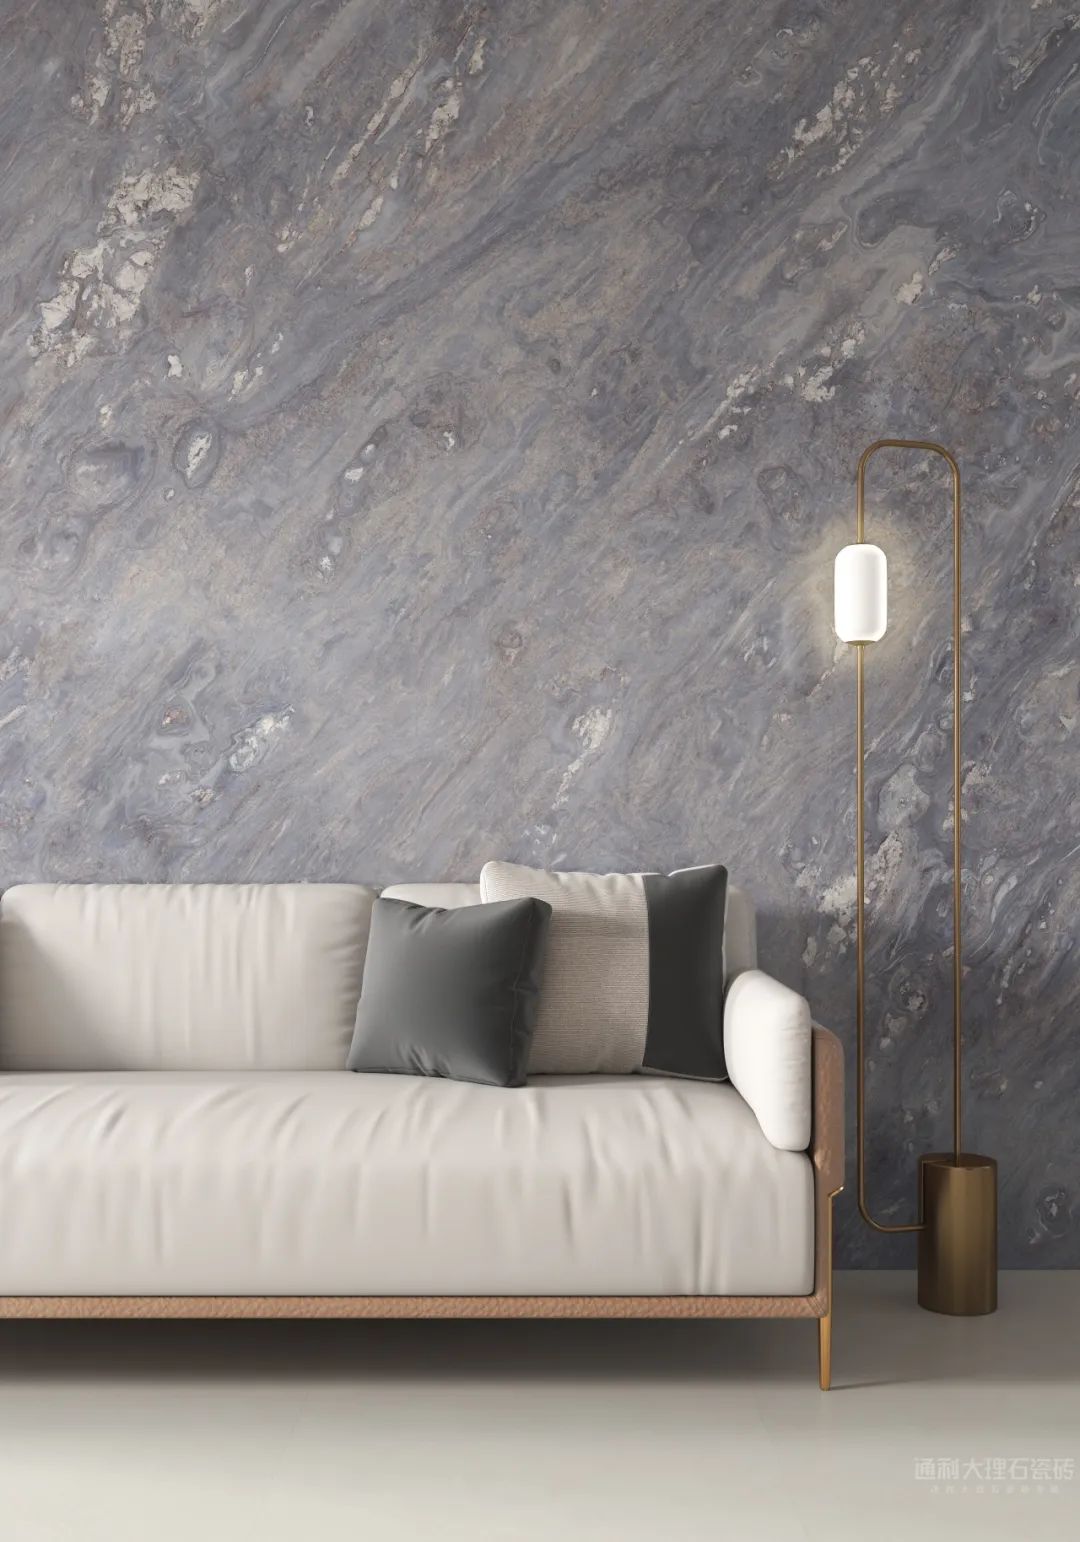 “发现连纹之美”系列之通利连纹大理石瓷砖在客厅空间的应用(图9)